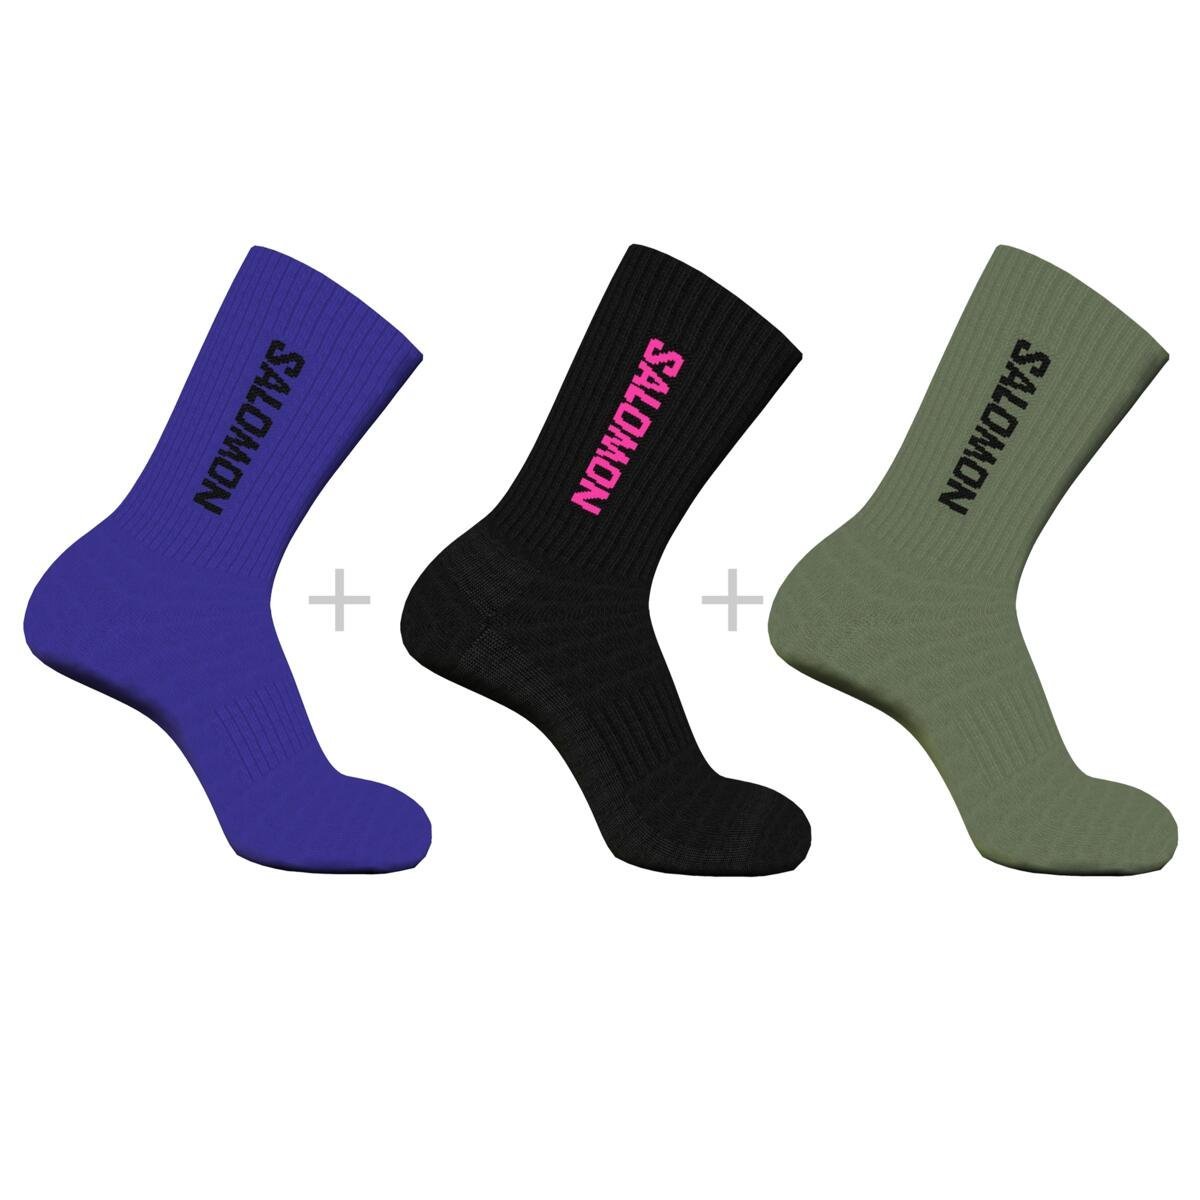 Ponožky Salomon Everyday Crew 3-pack - modré/čierne/zelené